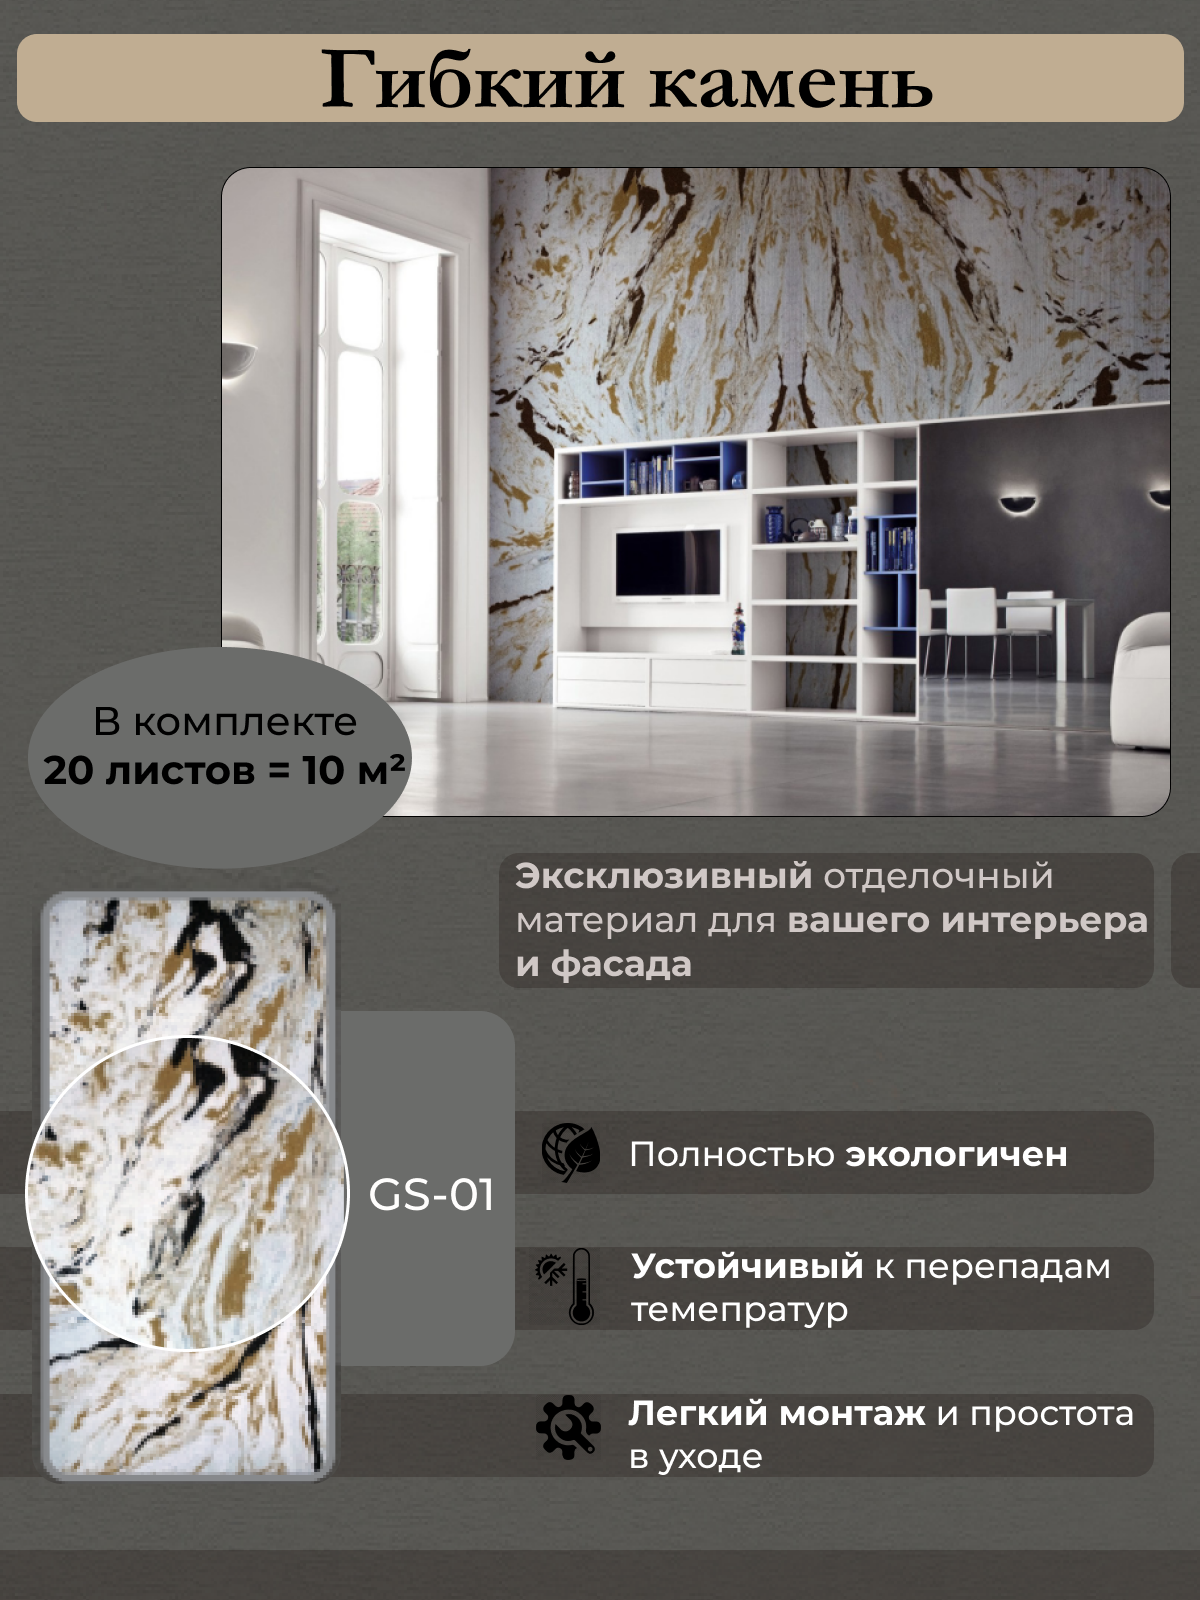 Каменные обои Сибирский декор GS-01 10 кв.м (20 листов)